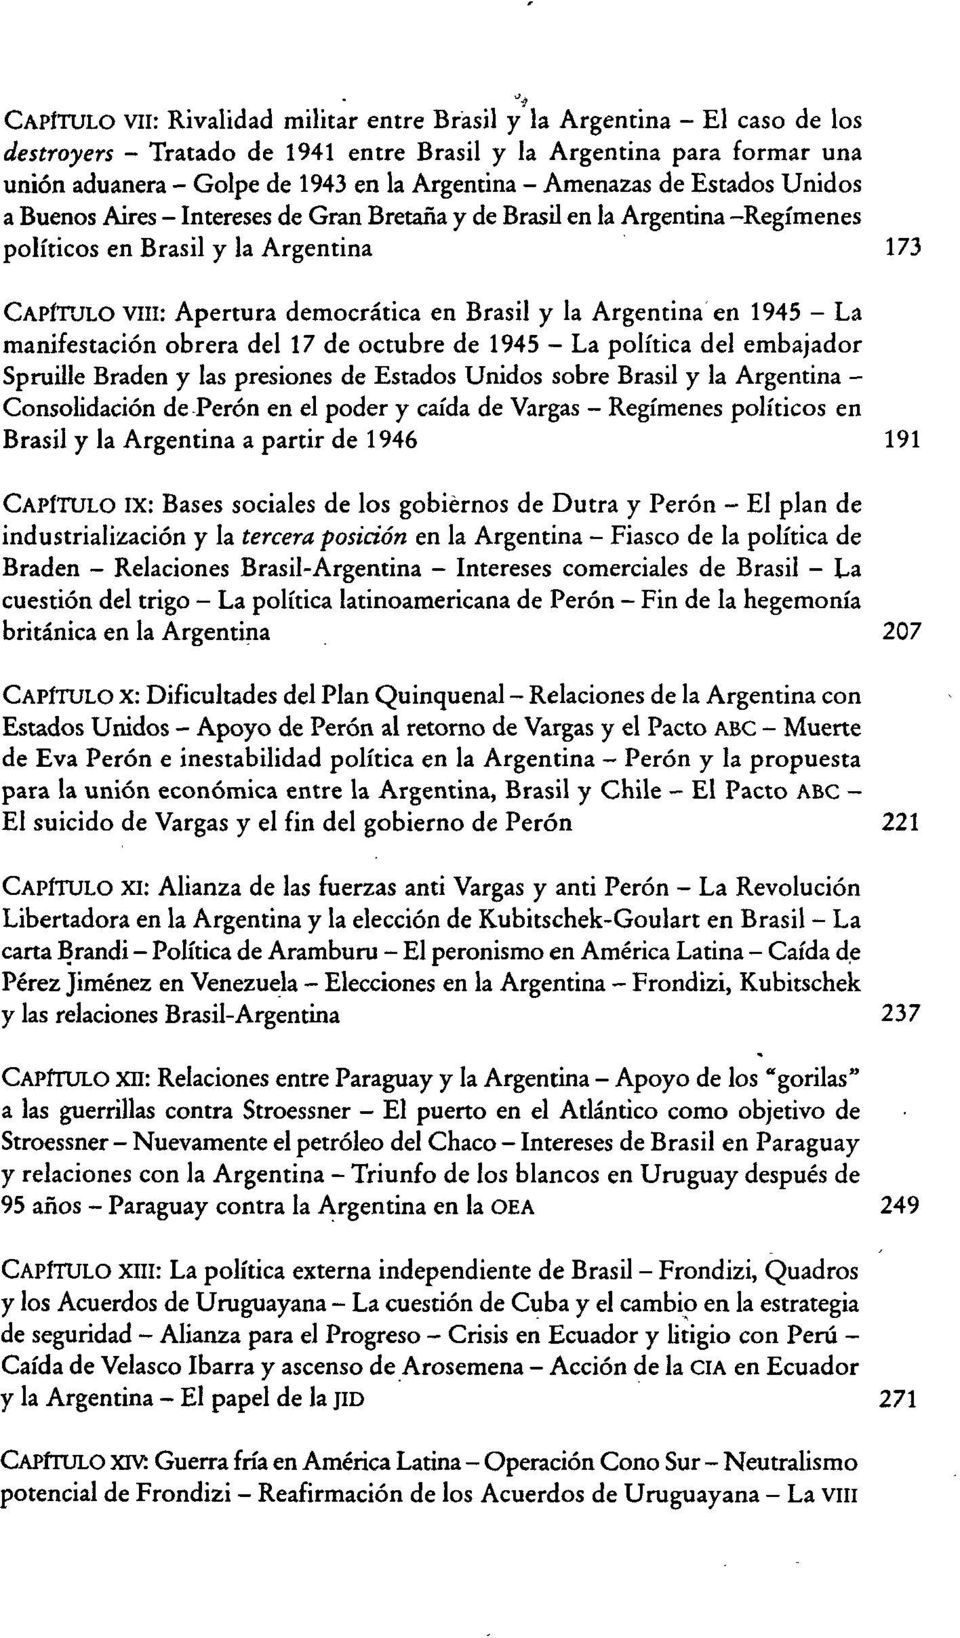 Argentina en 1945 - La manifestación obrera del 17 de octubre de 1945 - La política del embajador Spruille Braden y las presiones de Estados Unidos sobre Brasil y la Argentina - Consolidación de